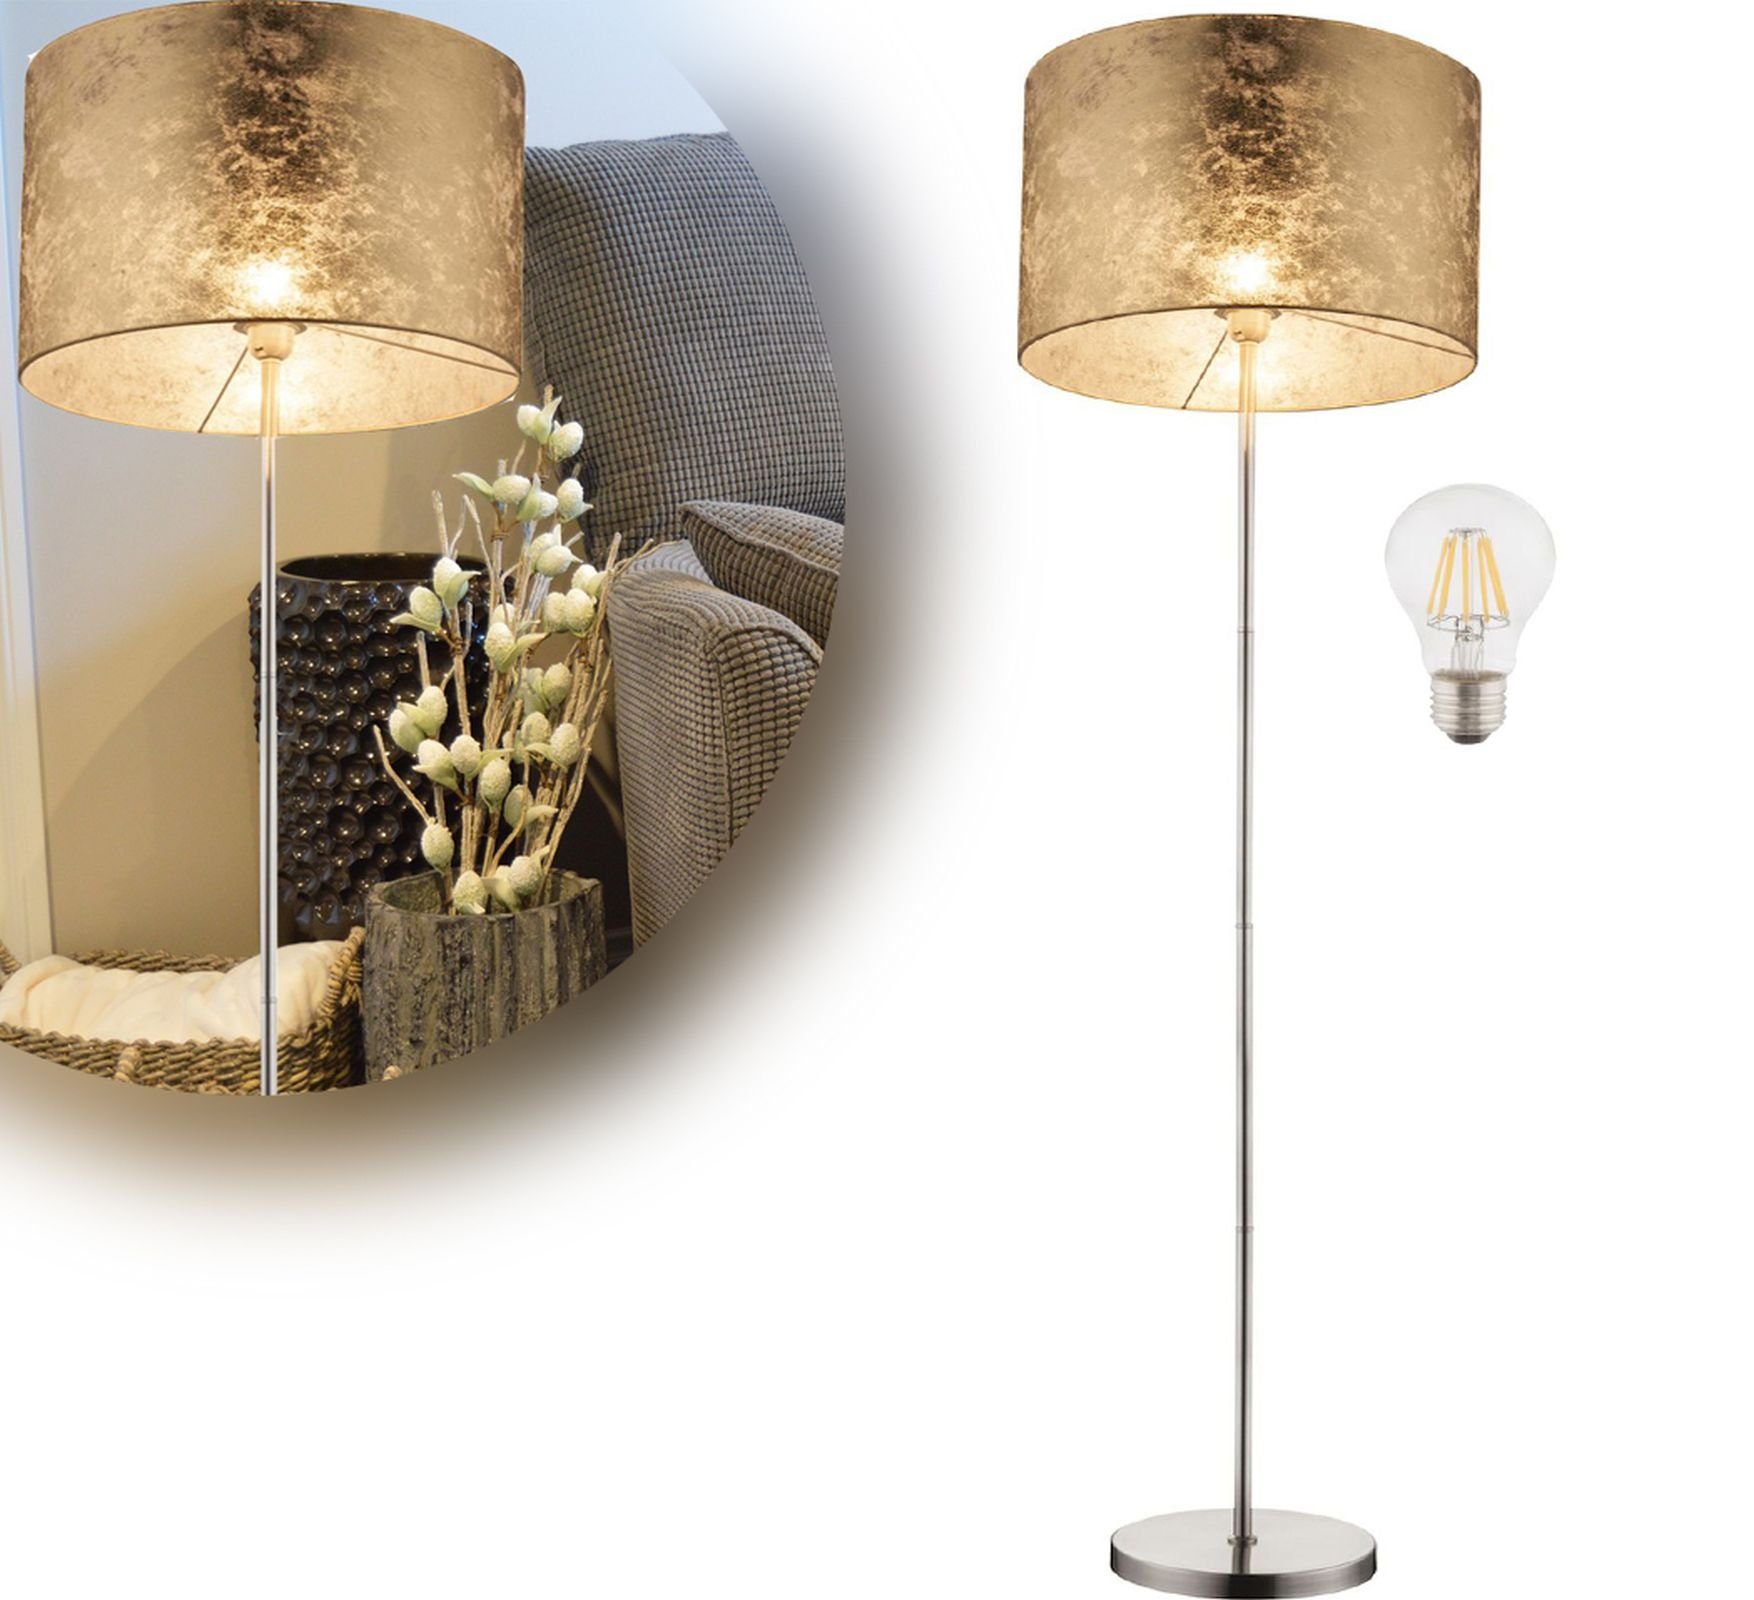 bmf-versand Stehlampe Stehlampe mit Leselampe Textil Wohnzimmer Gold, modern, vom LED Stehleuchte Küche, Leseleuchte, Esszimmer, Schlafzimmer, LED Schirm ist wechselbar, Lichtfarbe Leuchtmittel, Flur abhängig Schalter